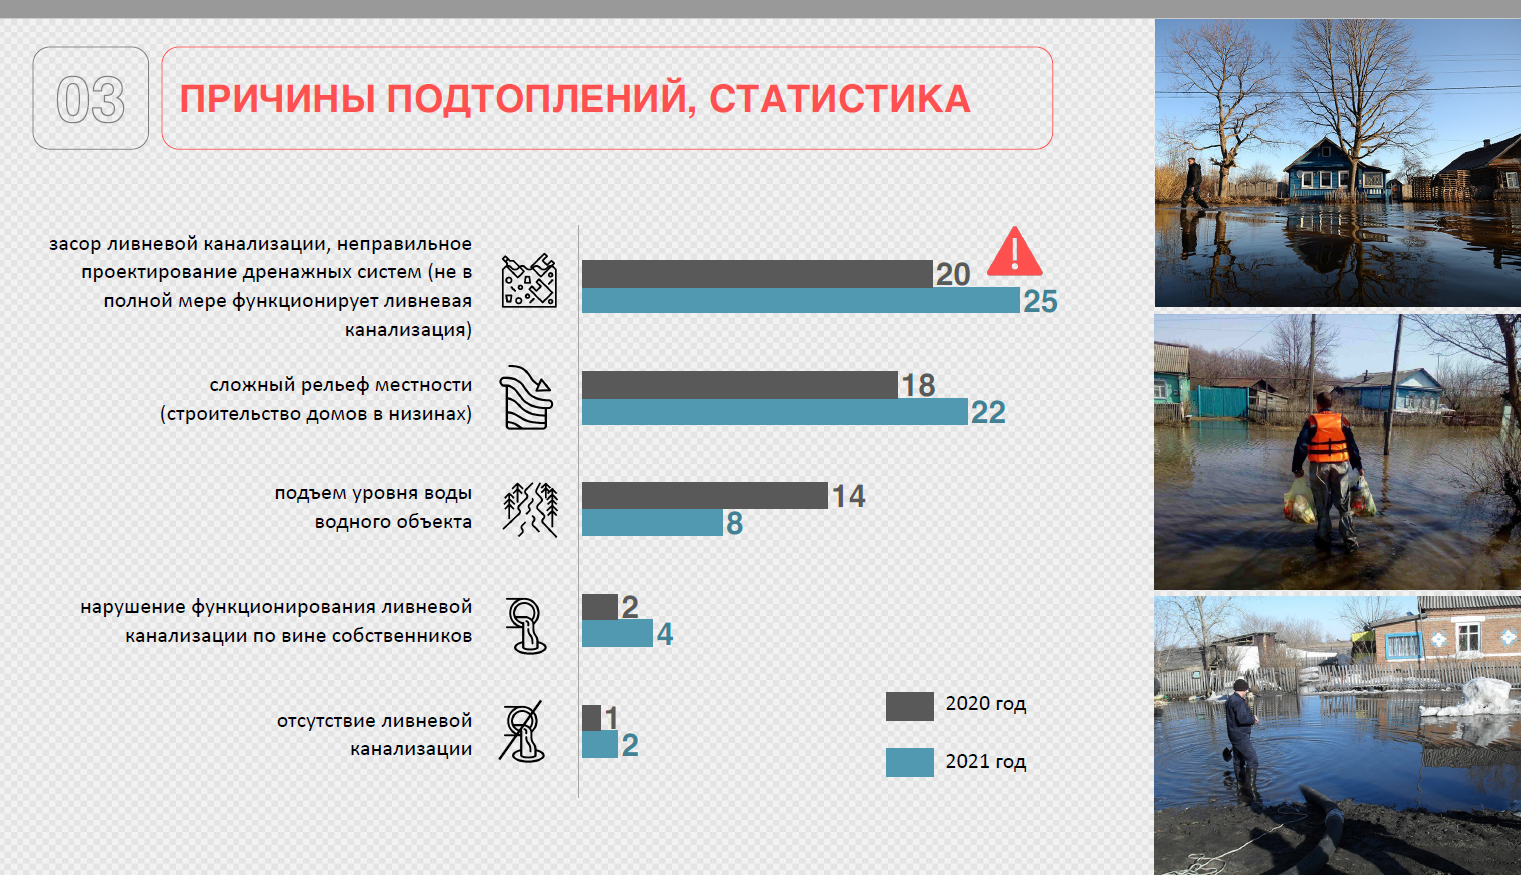 Статистика наводнений. Статистика подтопления. Чрезвычайные ситуации в Московской области. Причины подтопления. Чрезвычайные ситуации 2021 года